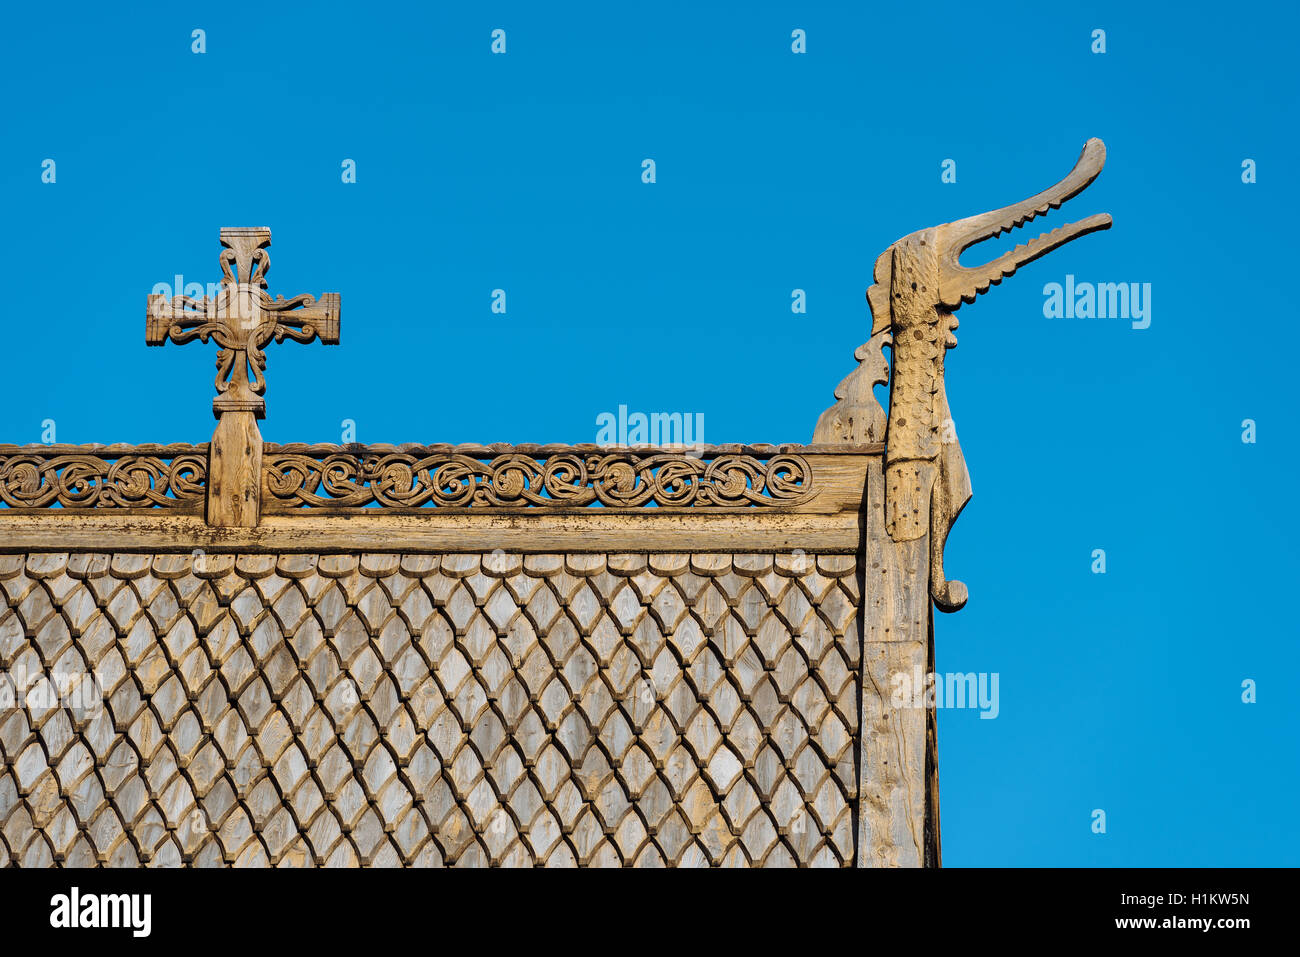 Détail du toit de bardeaux de bois, croix de bois et tête de dragon, Église Lom, Lom, Oppland, Norvège Banque D'Images